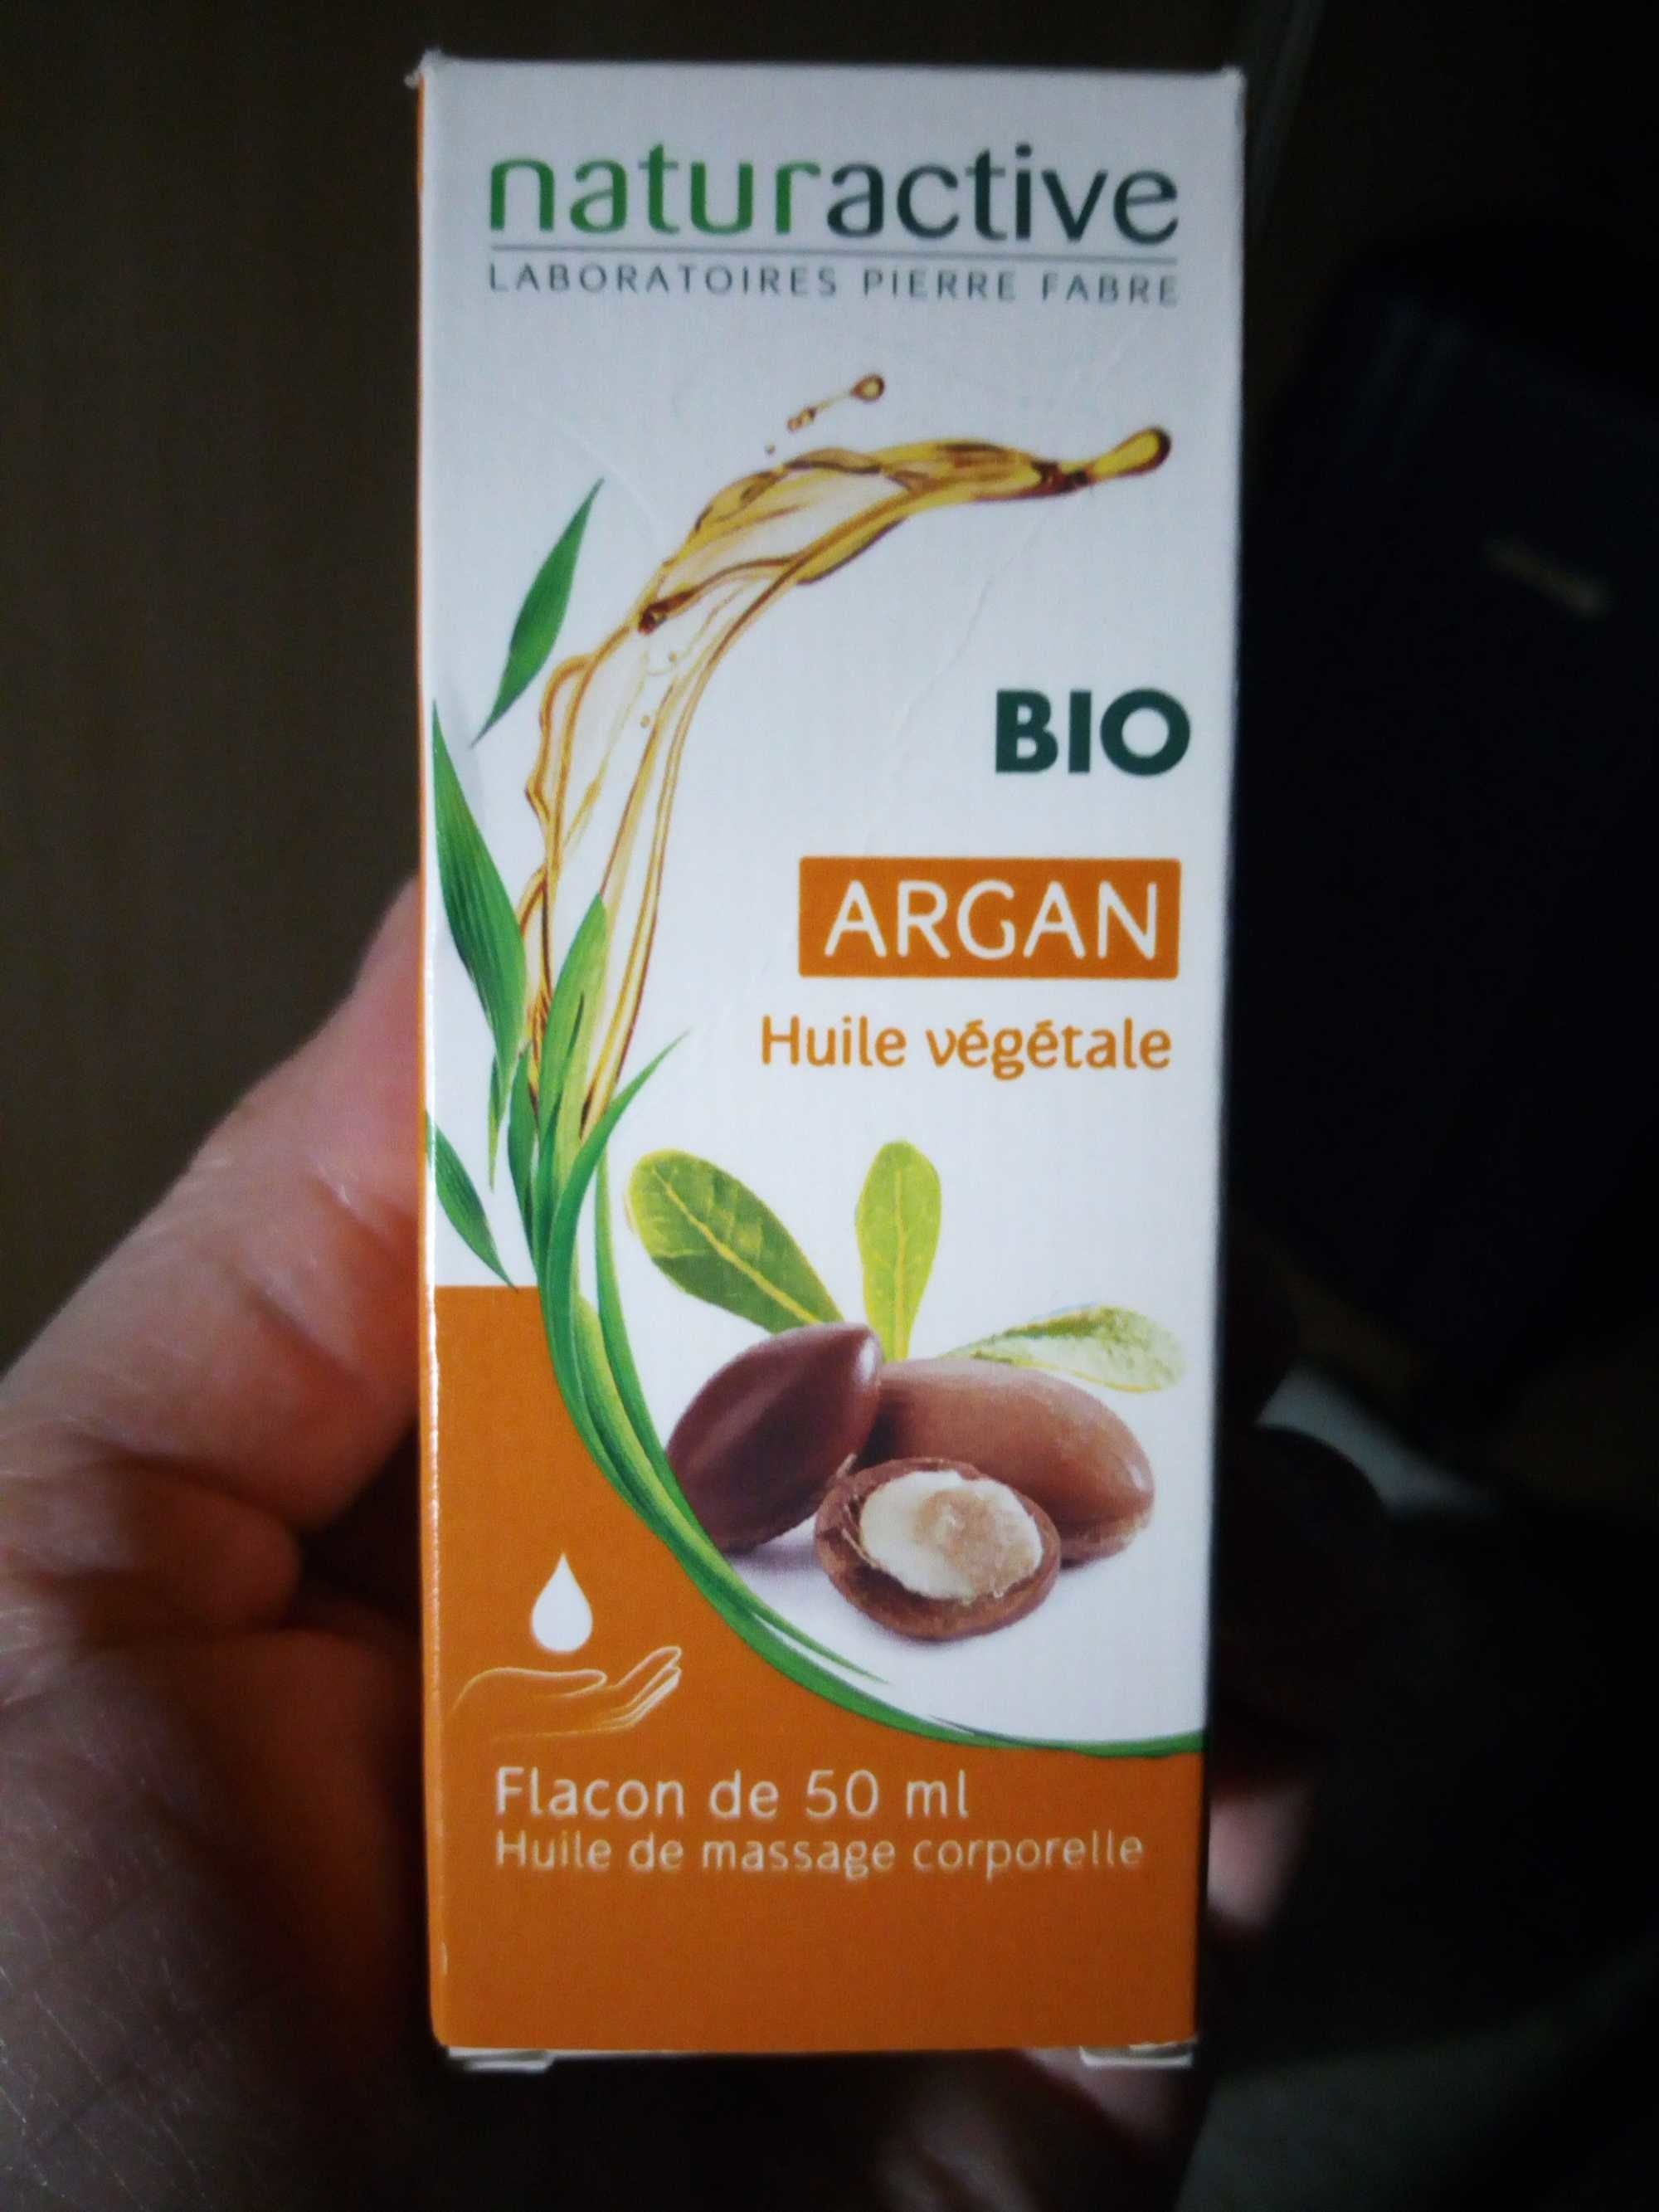 Bio Argan huile végétale - Product - fr